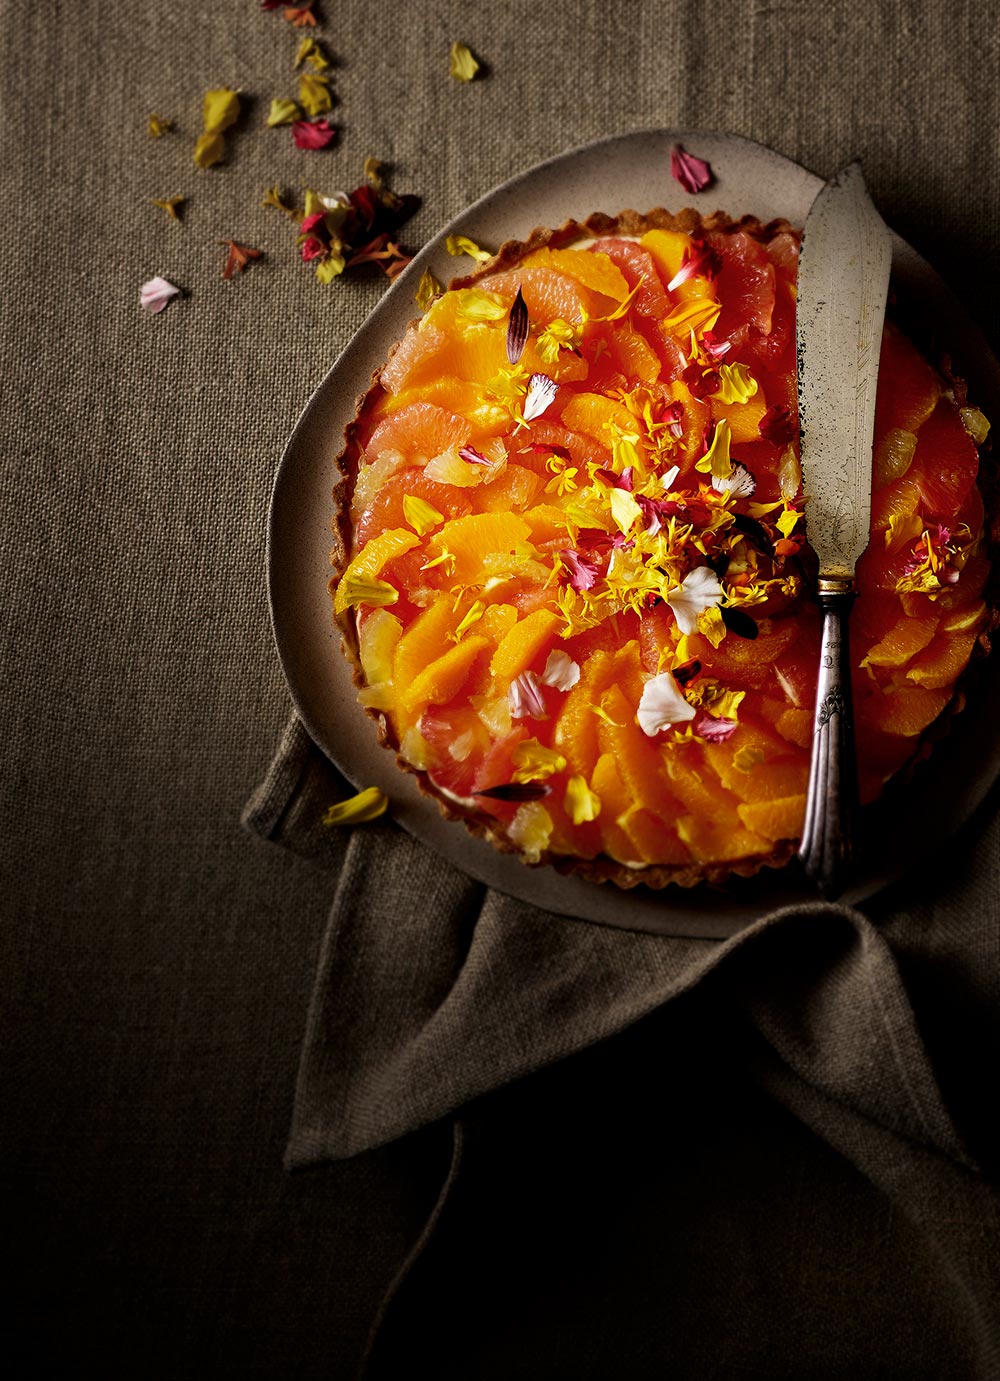 Recipe: lemon tart with lemon curd and fresh citrus fruits - - from the cookbook Lemons. Photo: Mikkel Adsbøll